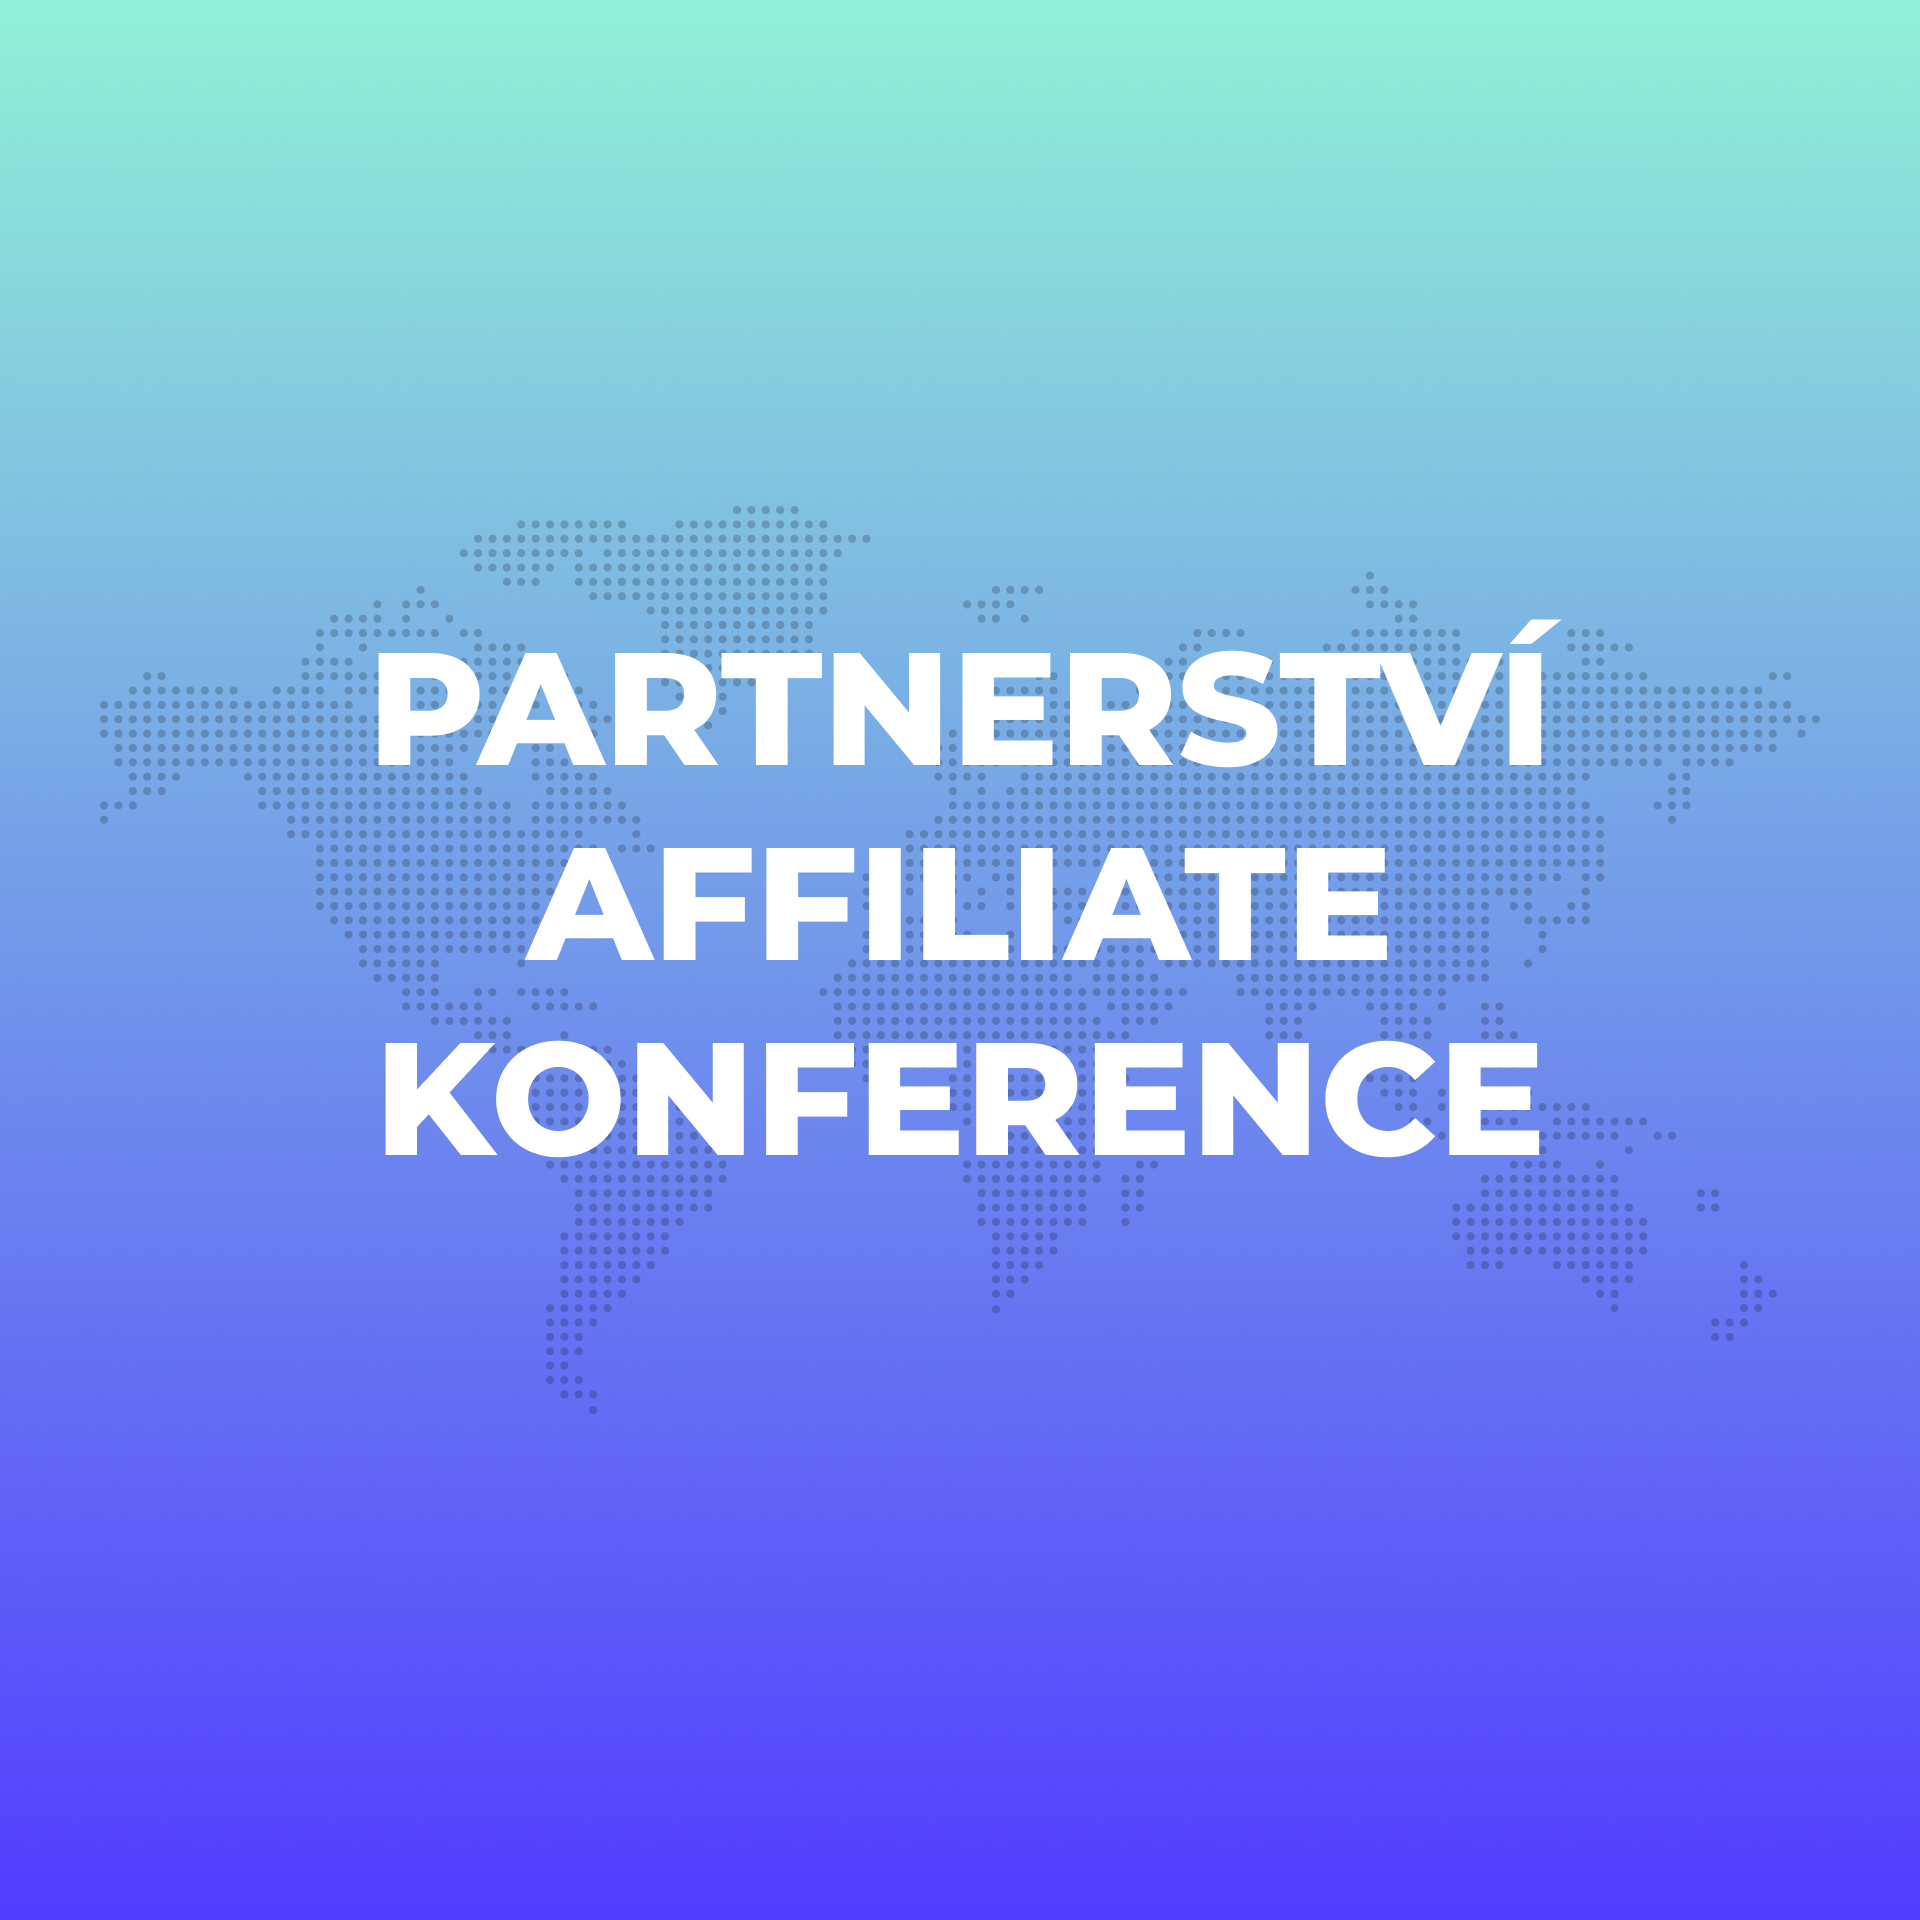 Partnerství affiliate konference